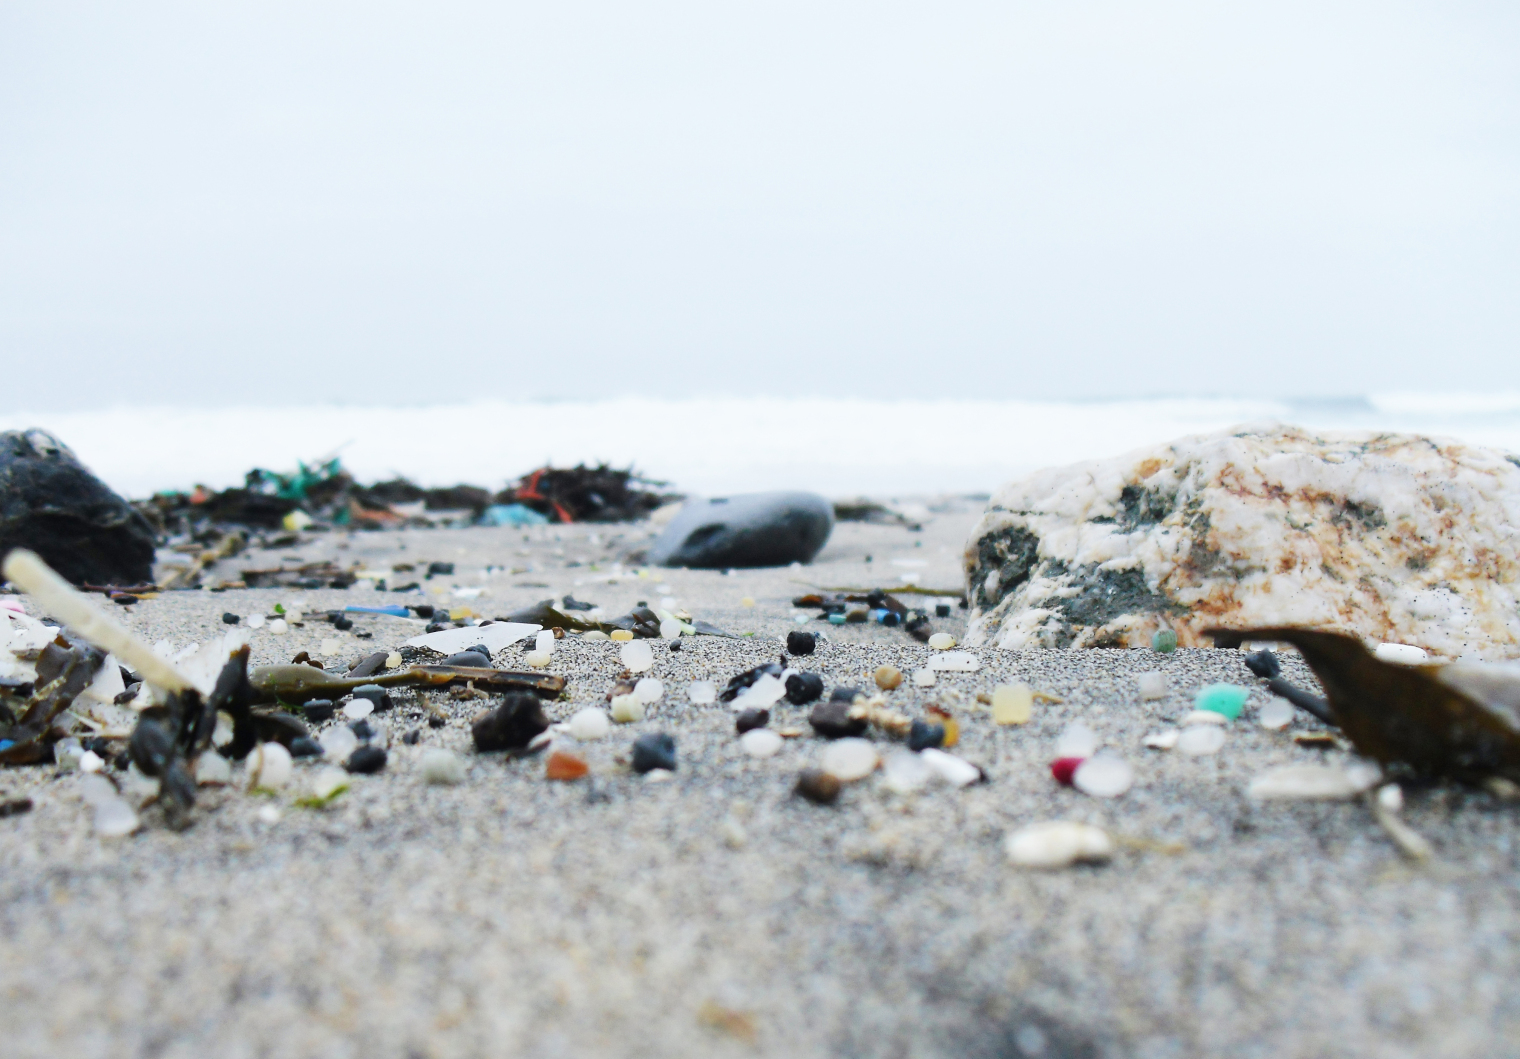 More information about "Τα μικροπλαστικά απορρίμματα κυριαρχούν στις παραλίες των νησιών της Μεσογείου"